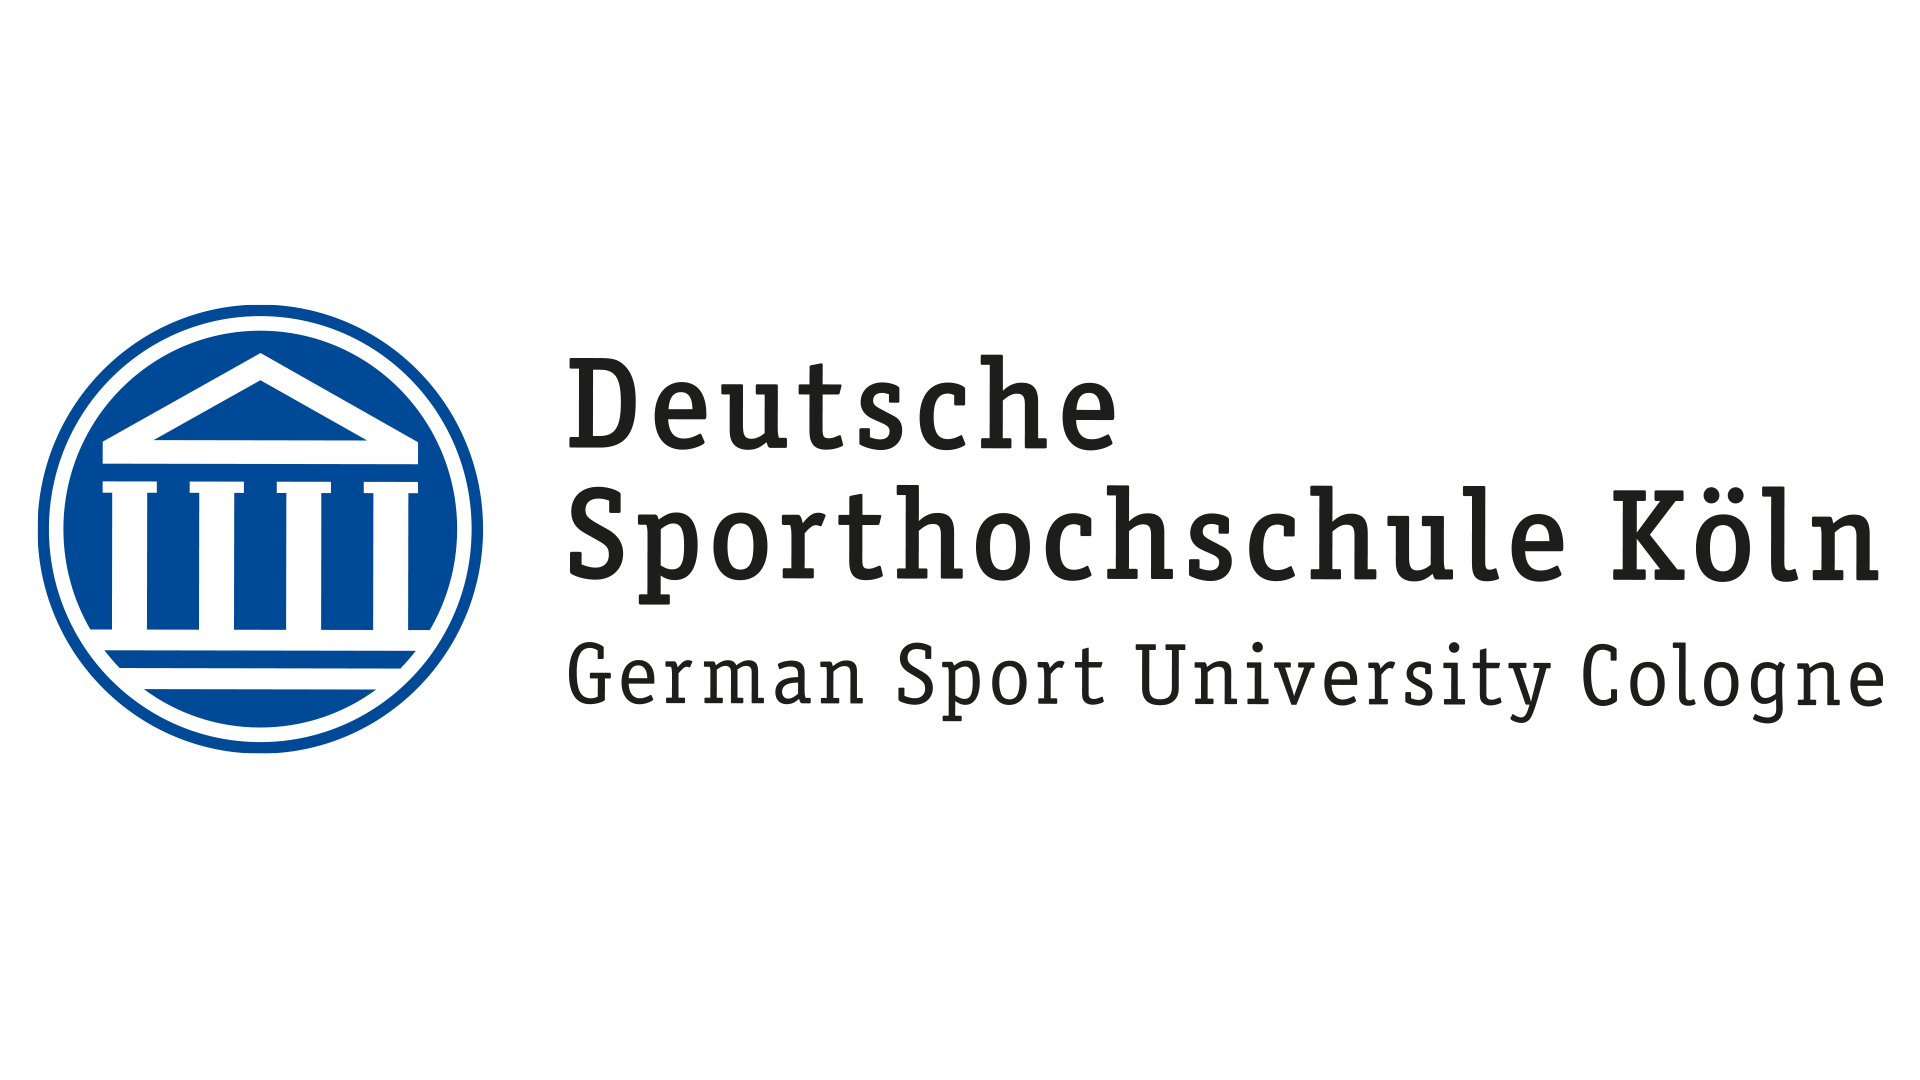 Zwei Fragebogenaktionen der Deutschen Sporthochschule Köln